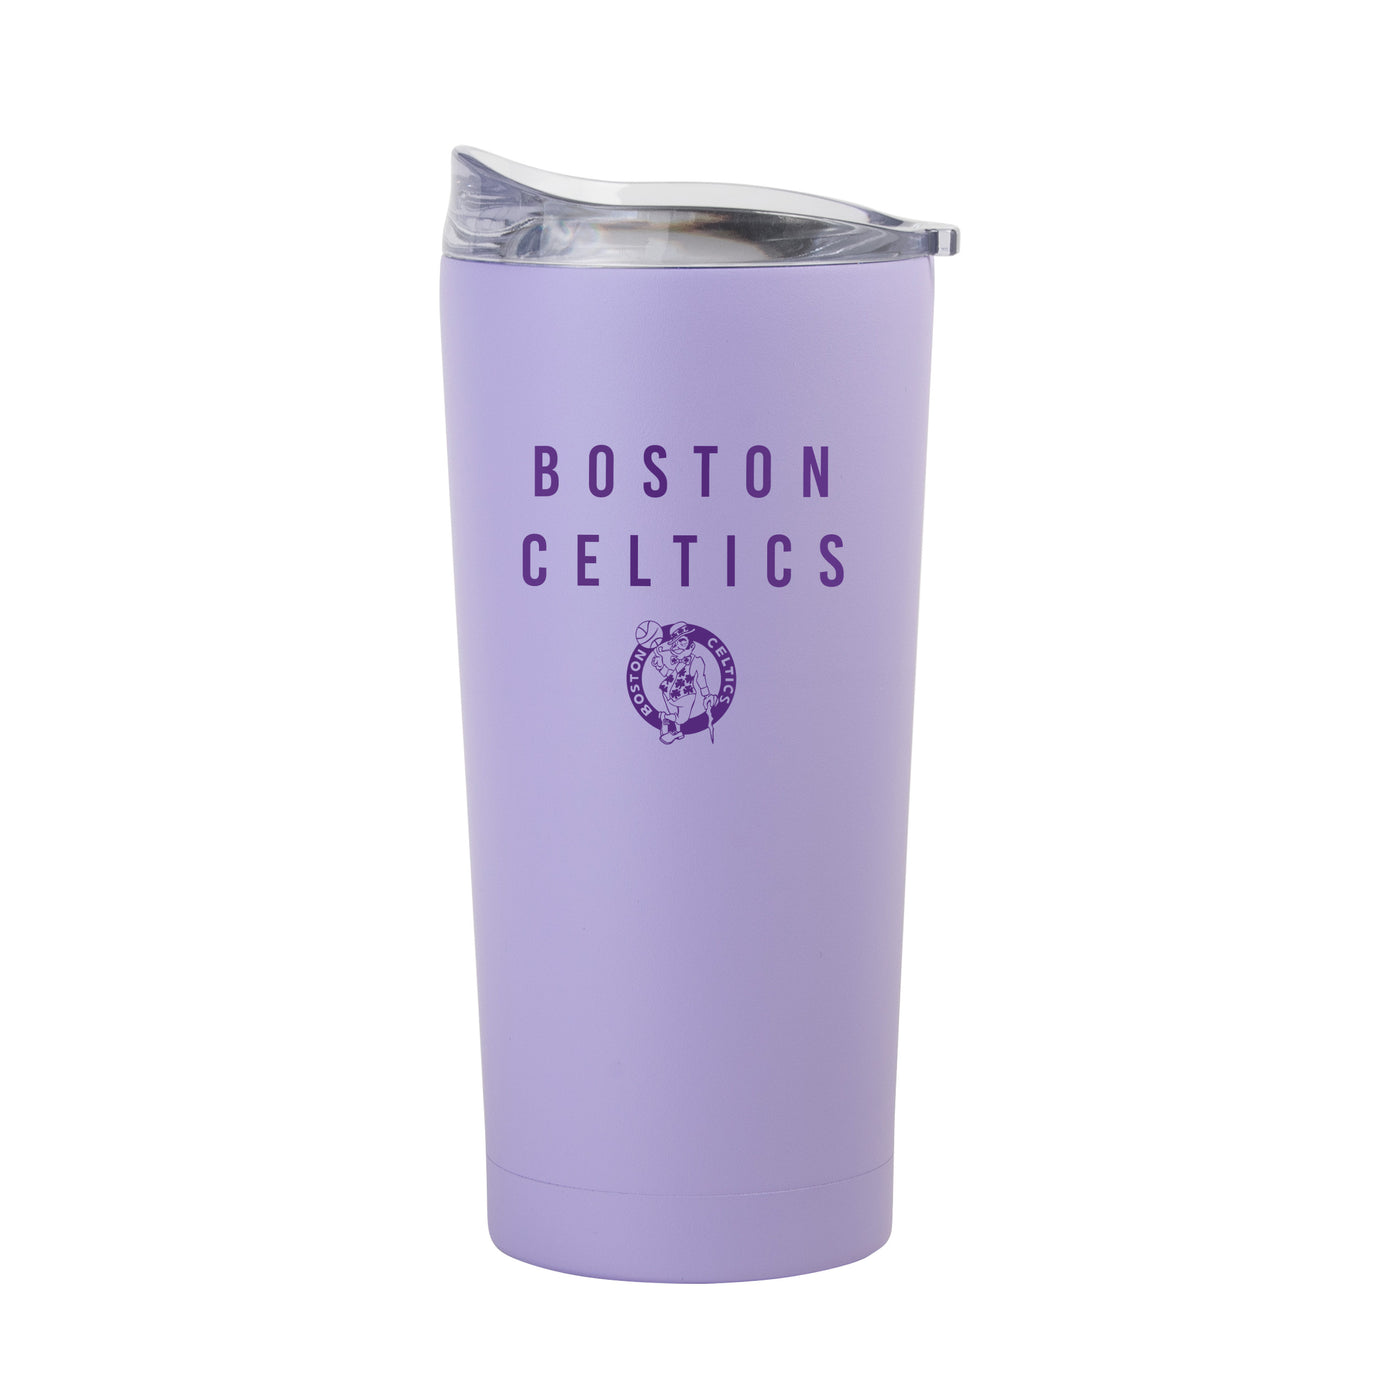 Boston Celtics 20oz Tonal Lavender Powder Coat Tumbler